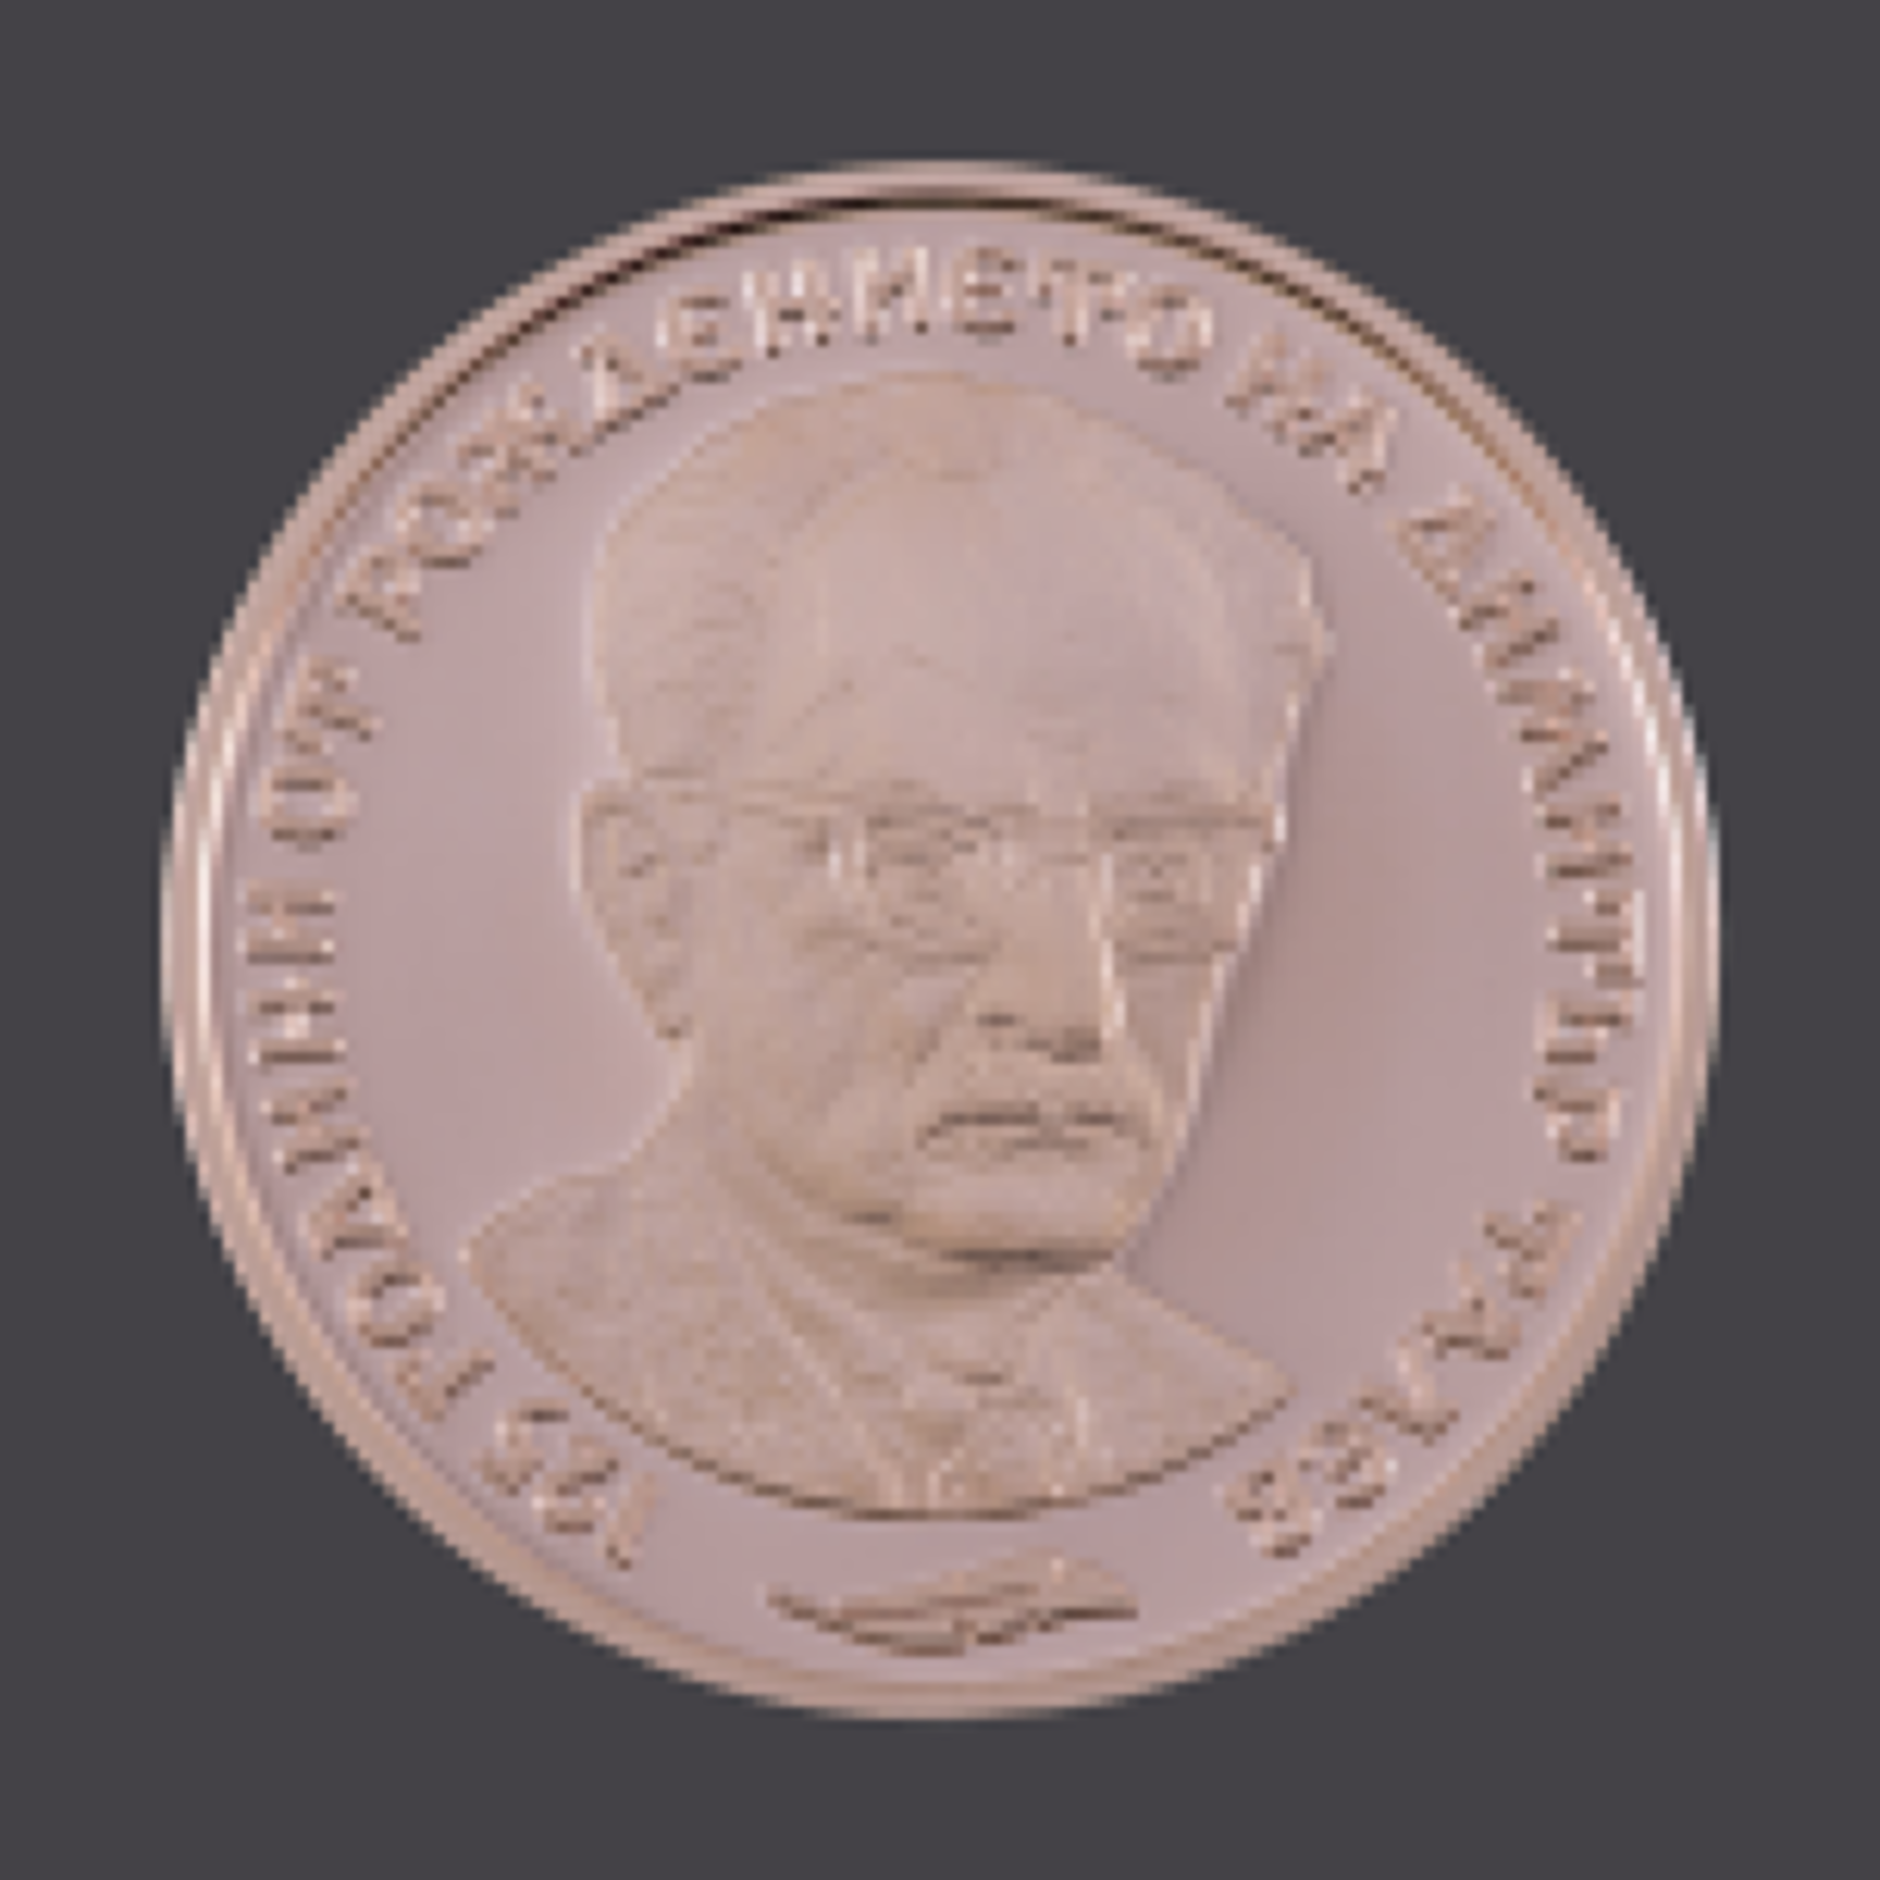 БНБ пуска медна възпоменателна монета 125 години от рождението на Димитър Талев